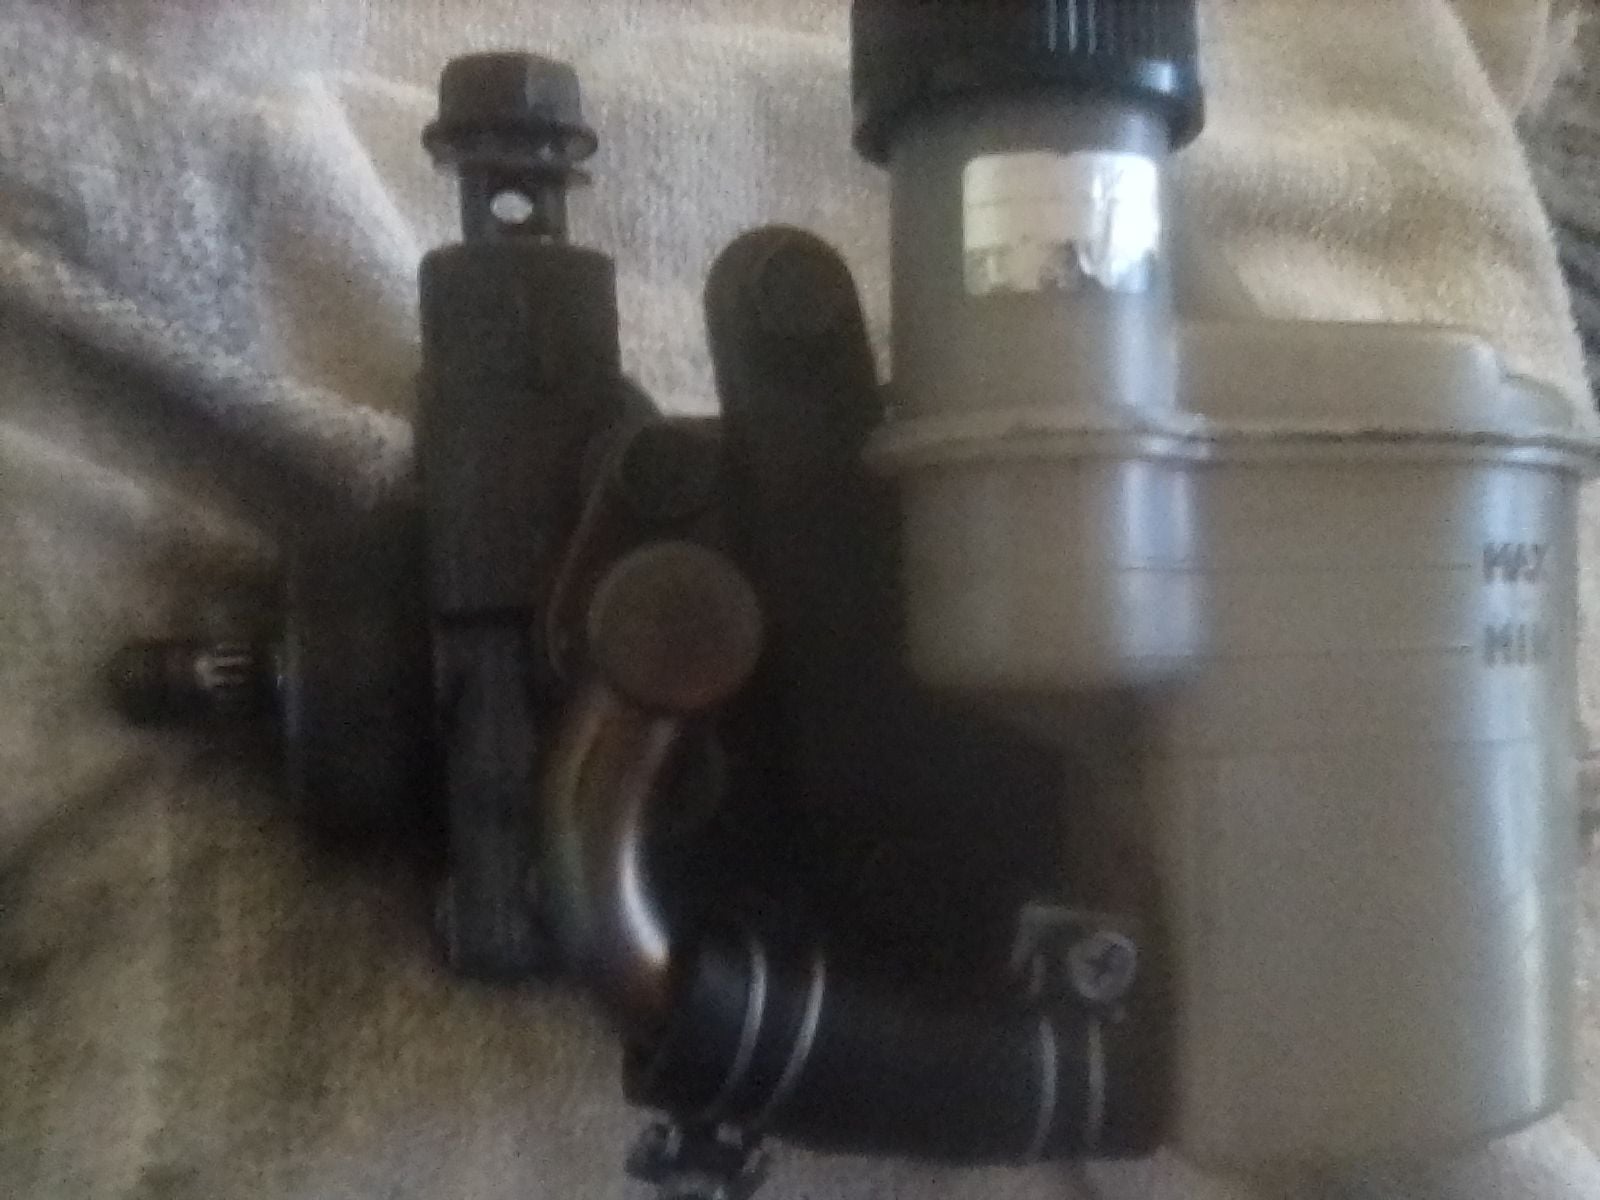 Steering/Suspension - FD - OEM Power Steering Wheel Pump & Reservoir - Used - 1993 to 1995 Mazda RX-7 - San Jose, CA 95121, United States